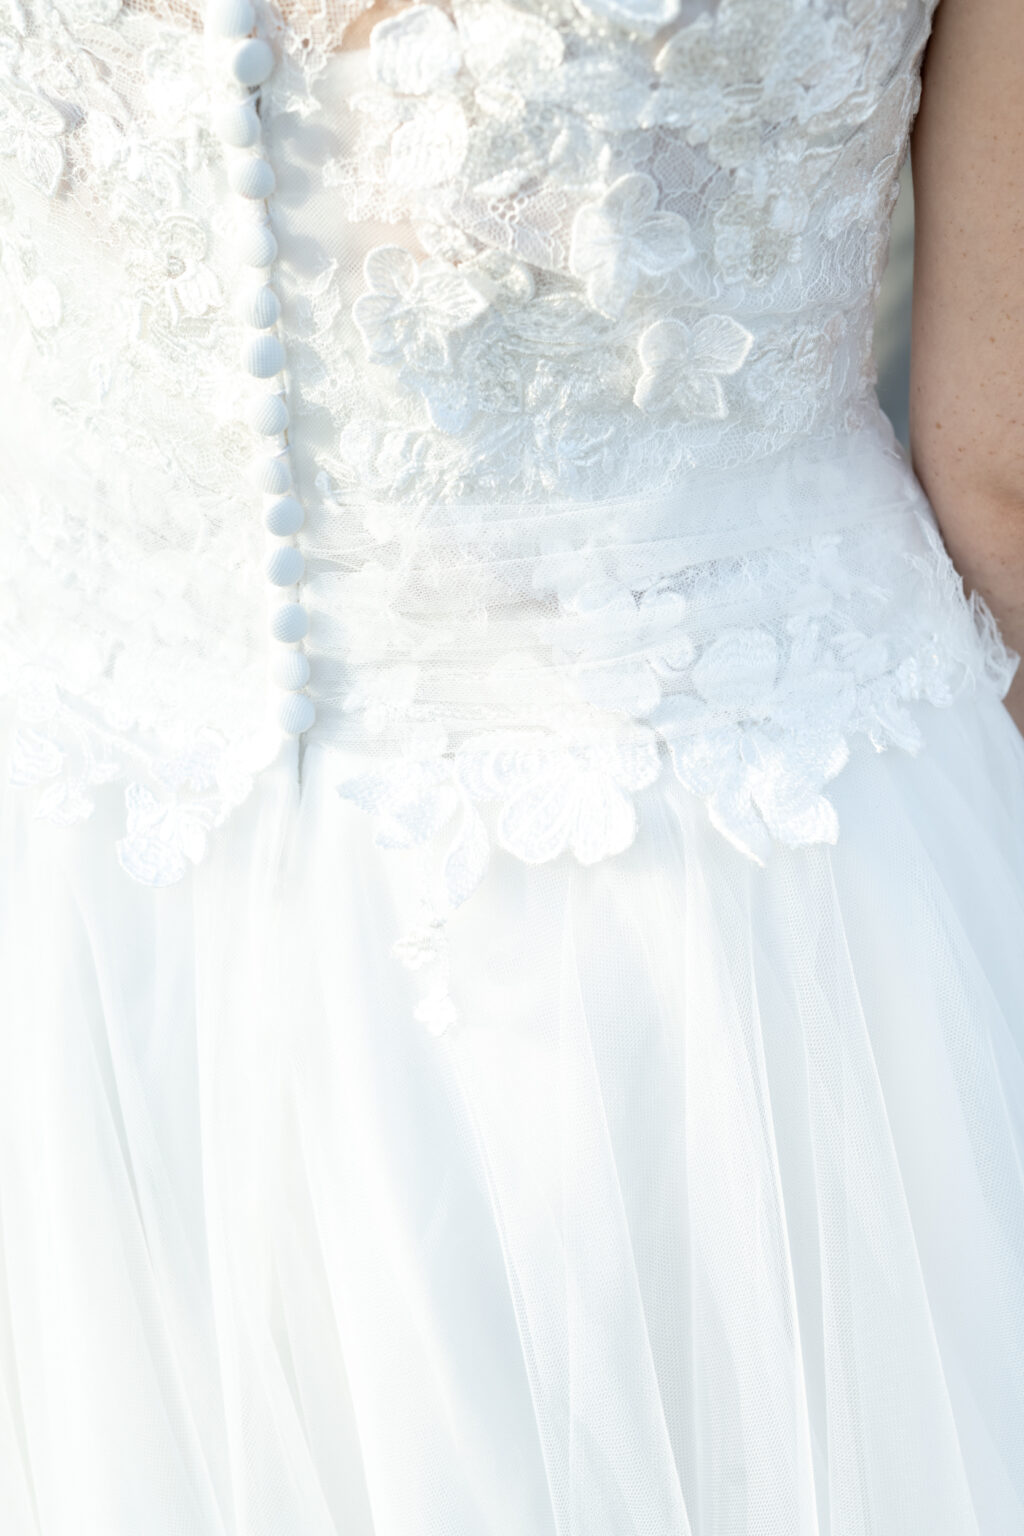 mariage chateau malromé detail robe de mariée